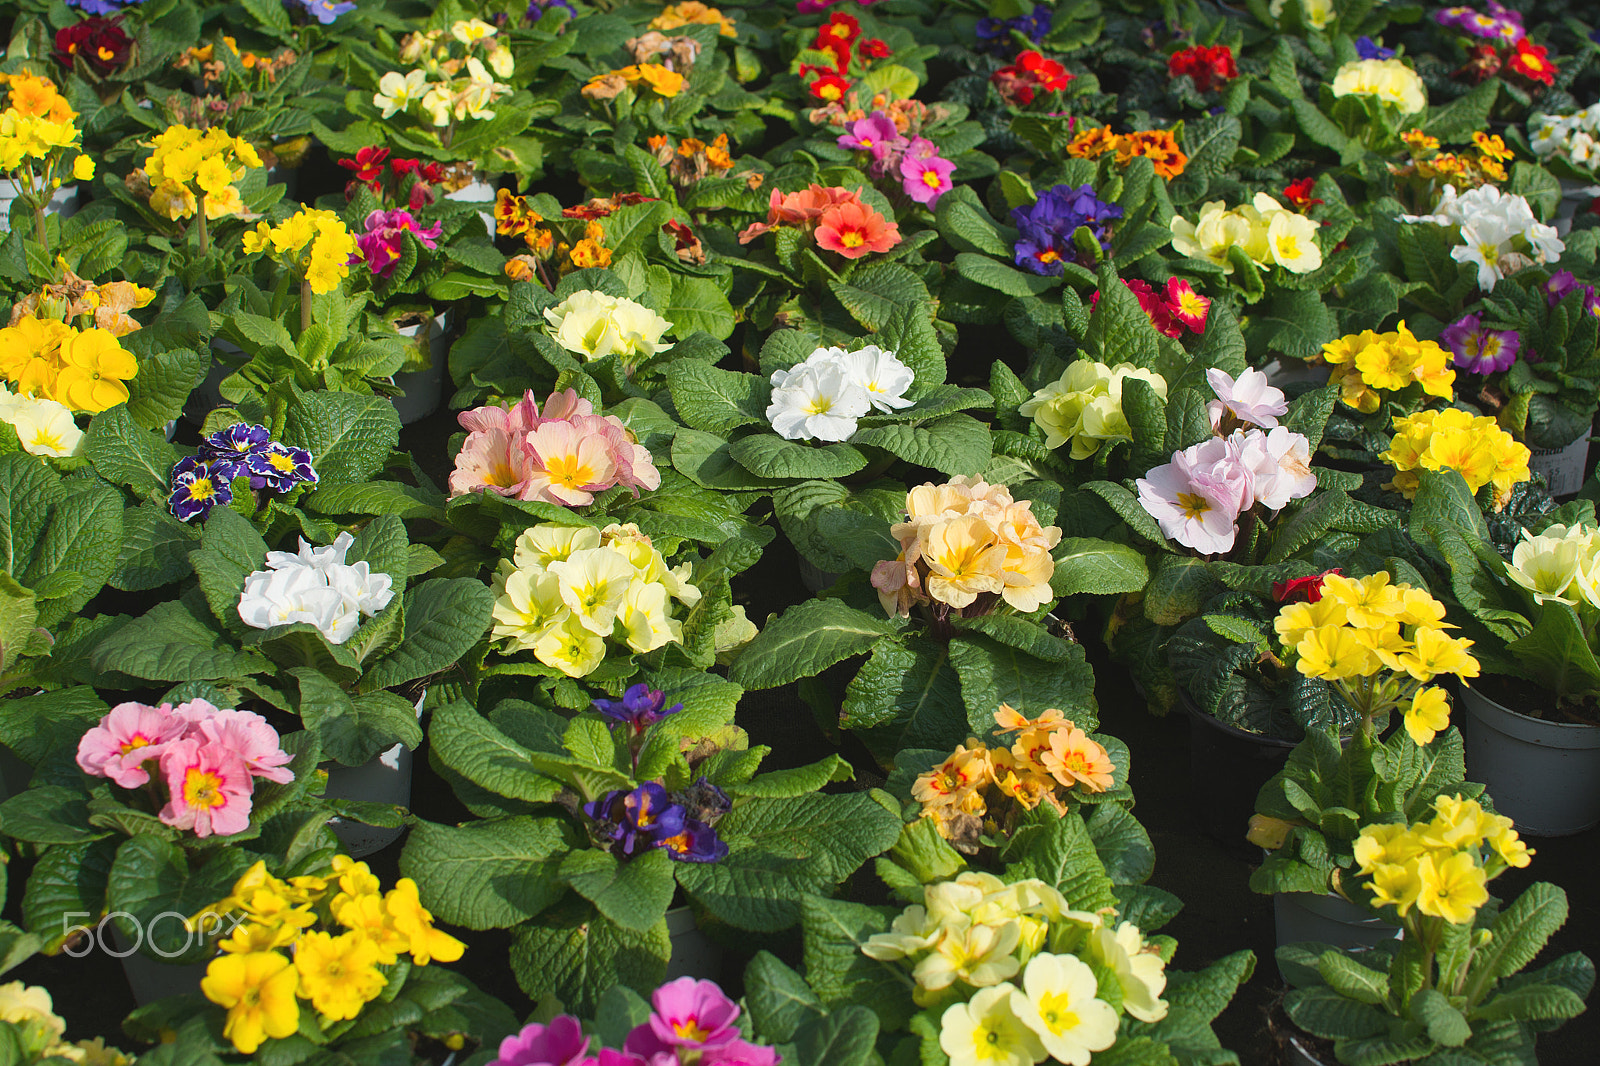 Nikon D7100 + AF-S DX Zoom-Nikkor 18-55mm f/3.5-5.6G ED sample photo. Primula spring flowers background photography